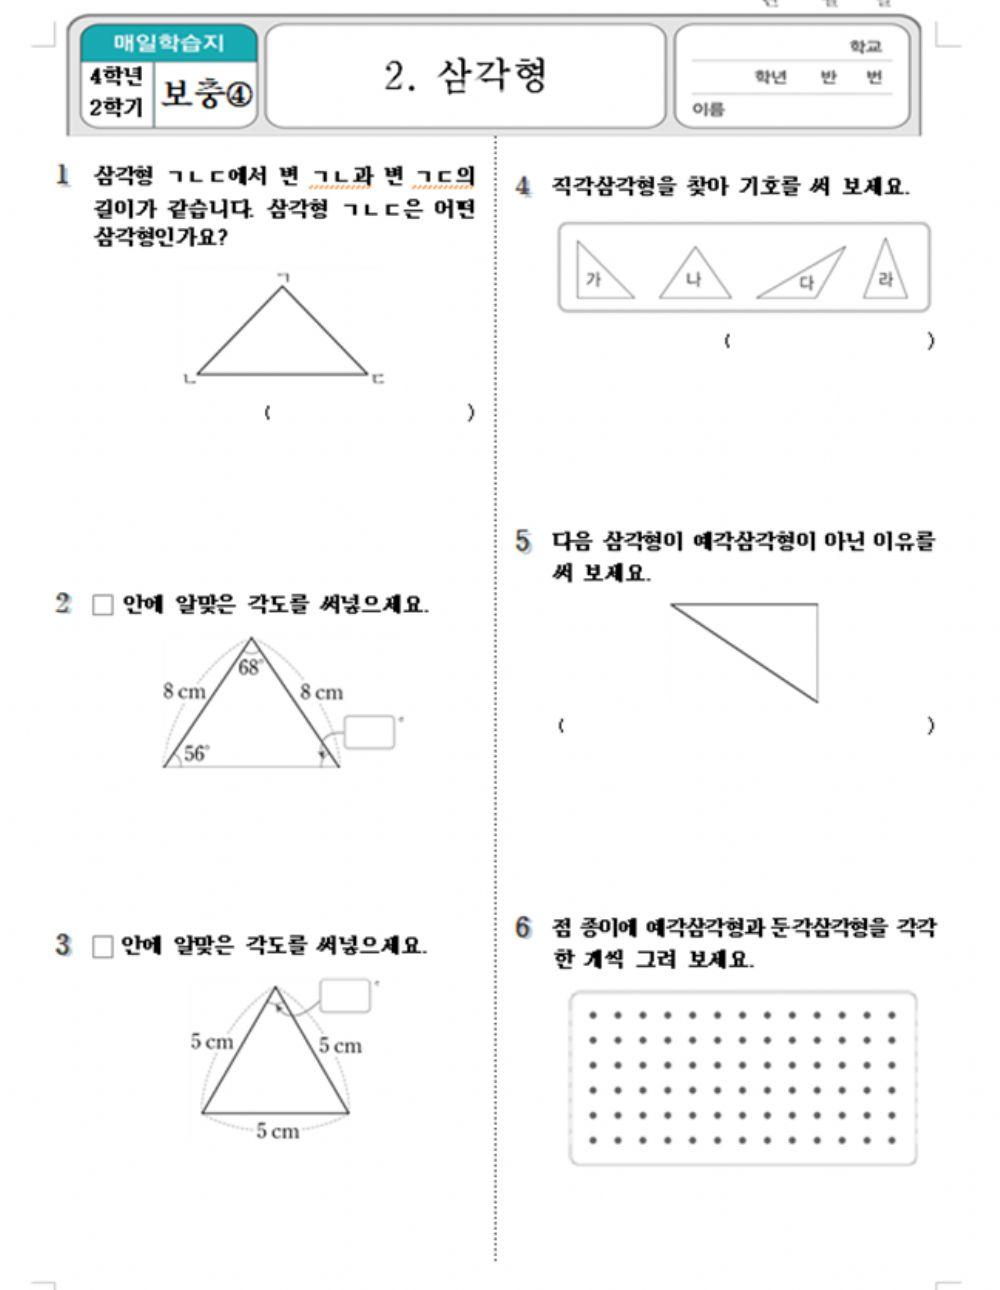 2. 삼각형